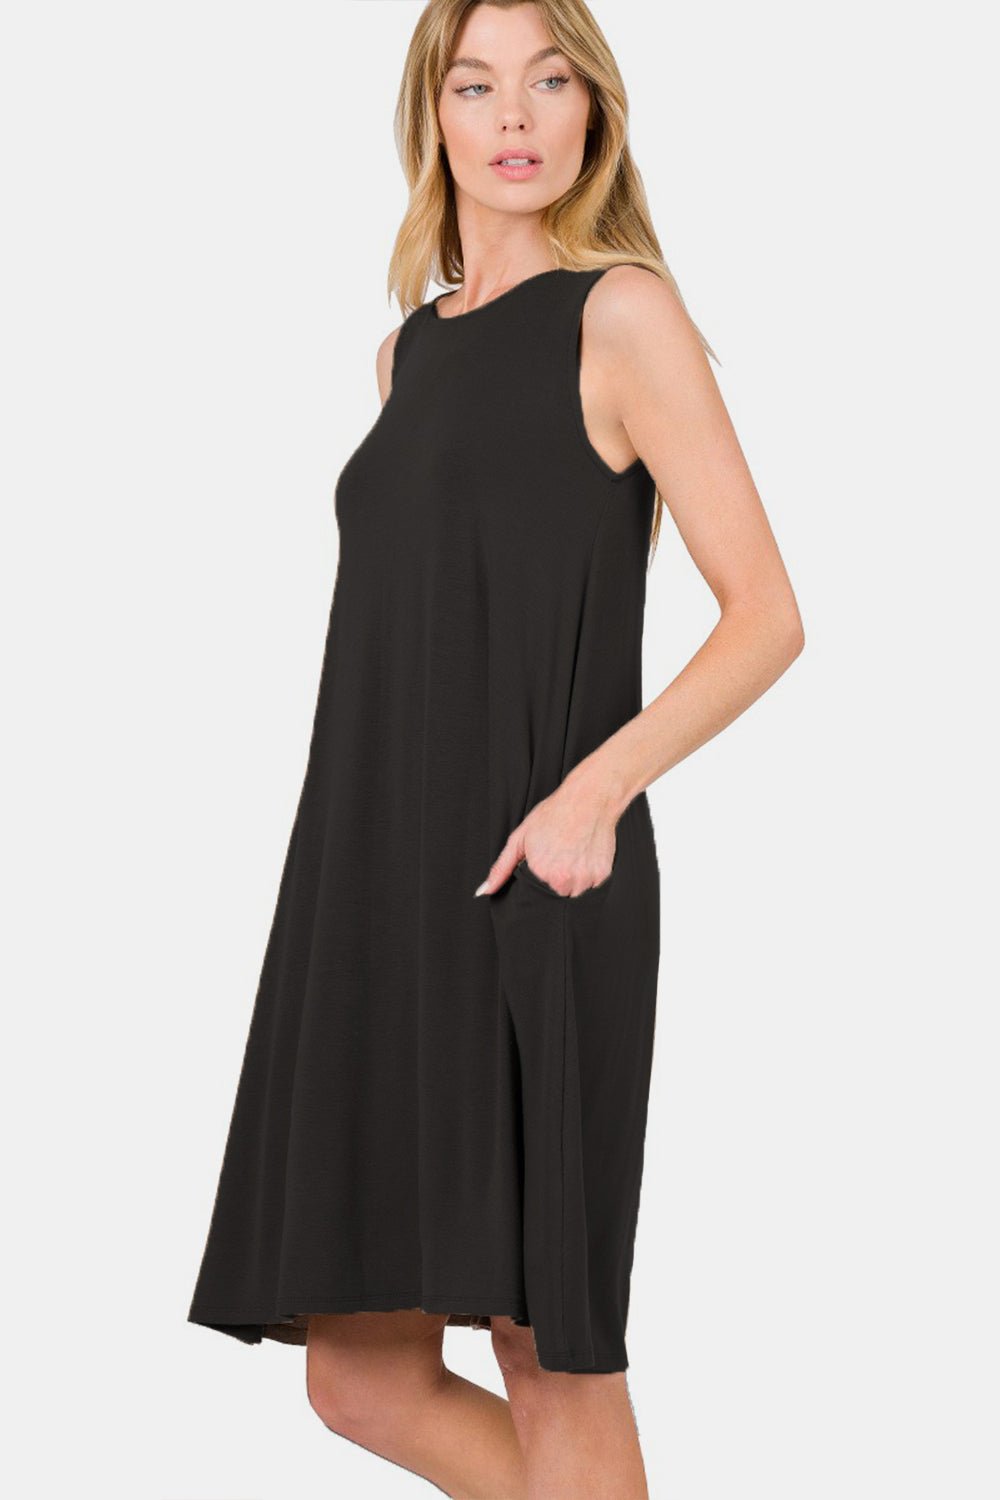 Sleeveless Flared Knee-Length Dress with Pockets in BlackKnee-Length DressZenana